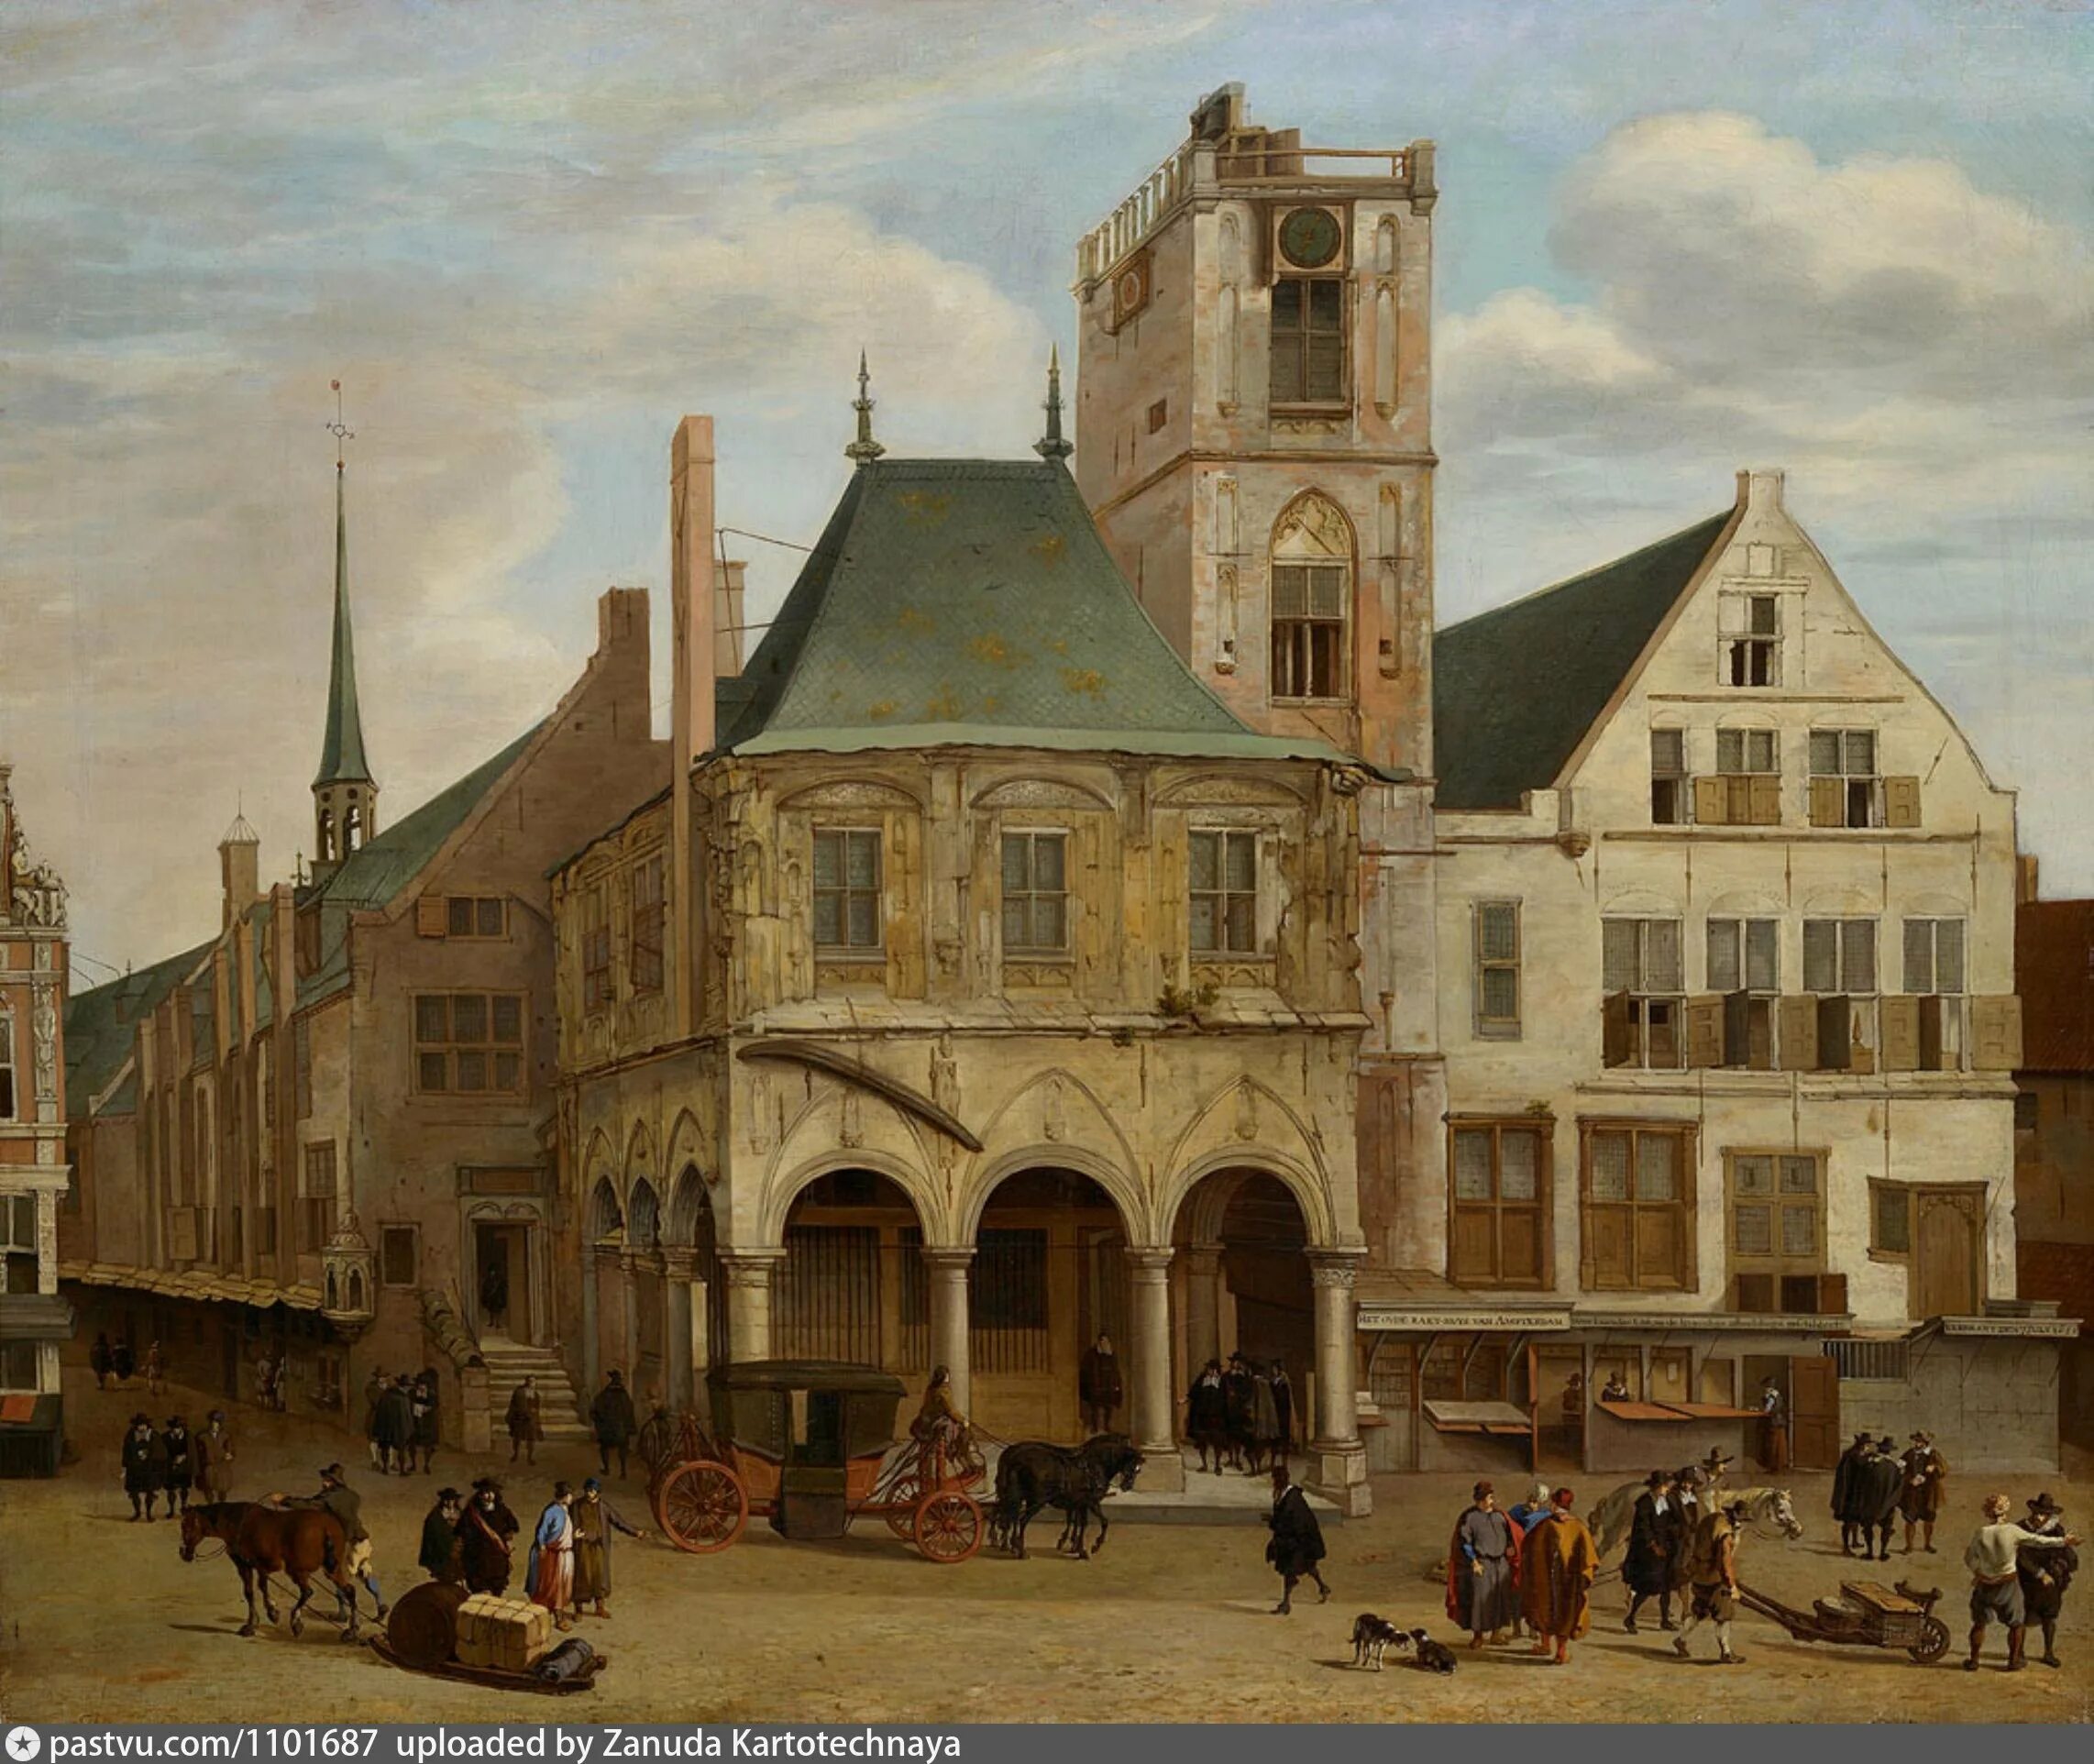 Сооружения нового времени. Амстердамская ратуша картины 17 века. Голландия 17 век архитектура.